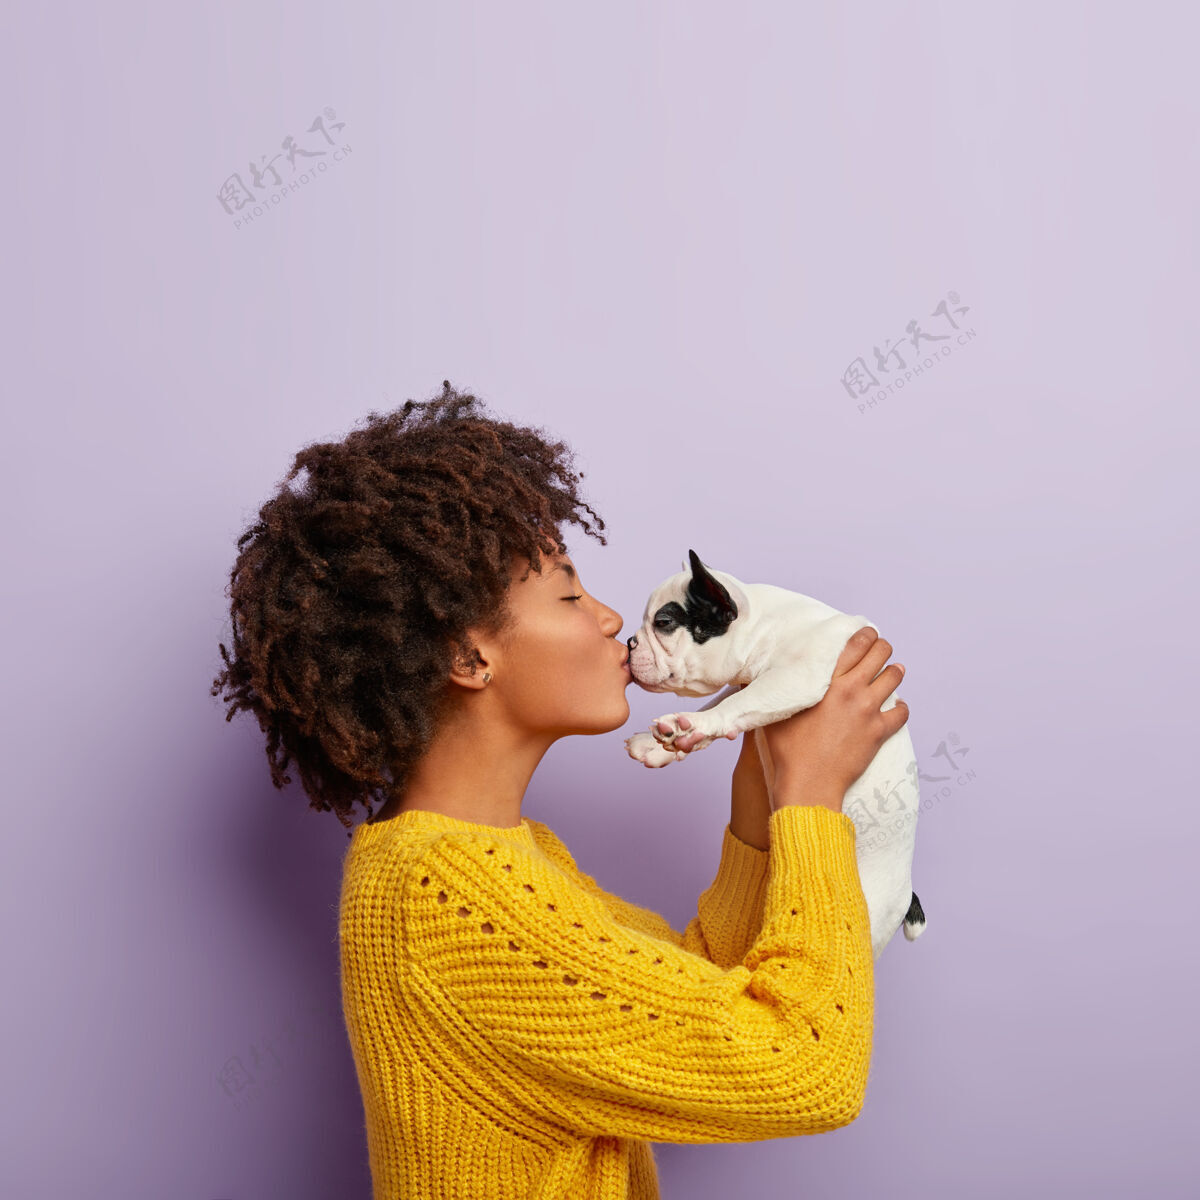 狗浪漫时刻卷发黑皮肤的女狗主人喜欢和可爱的宠物接吻训练毛衣发型